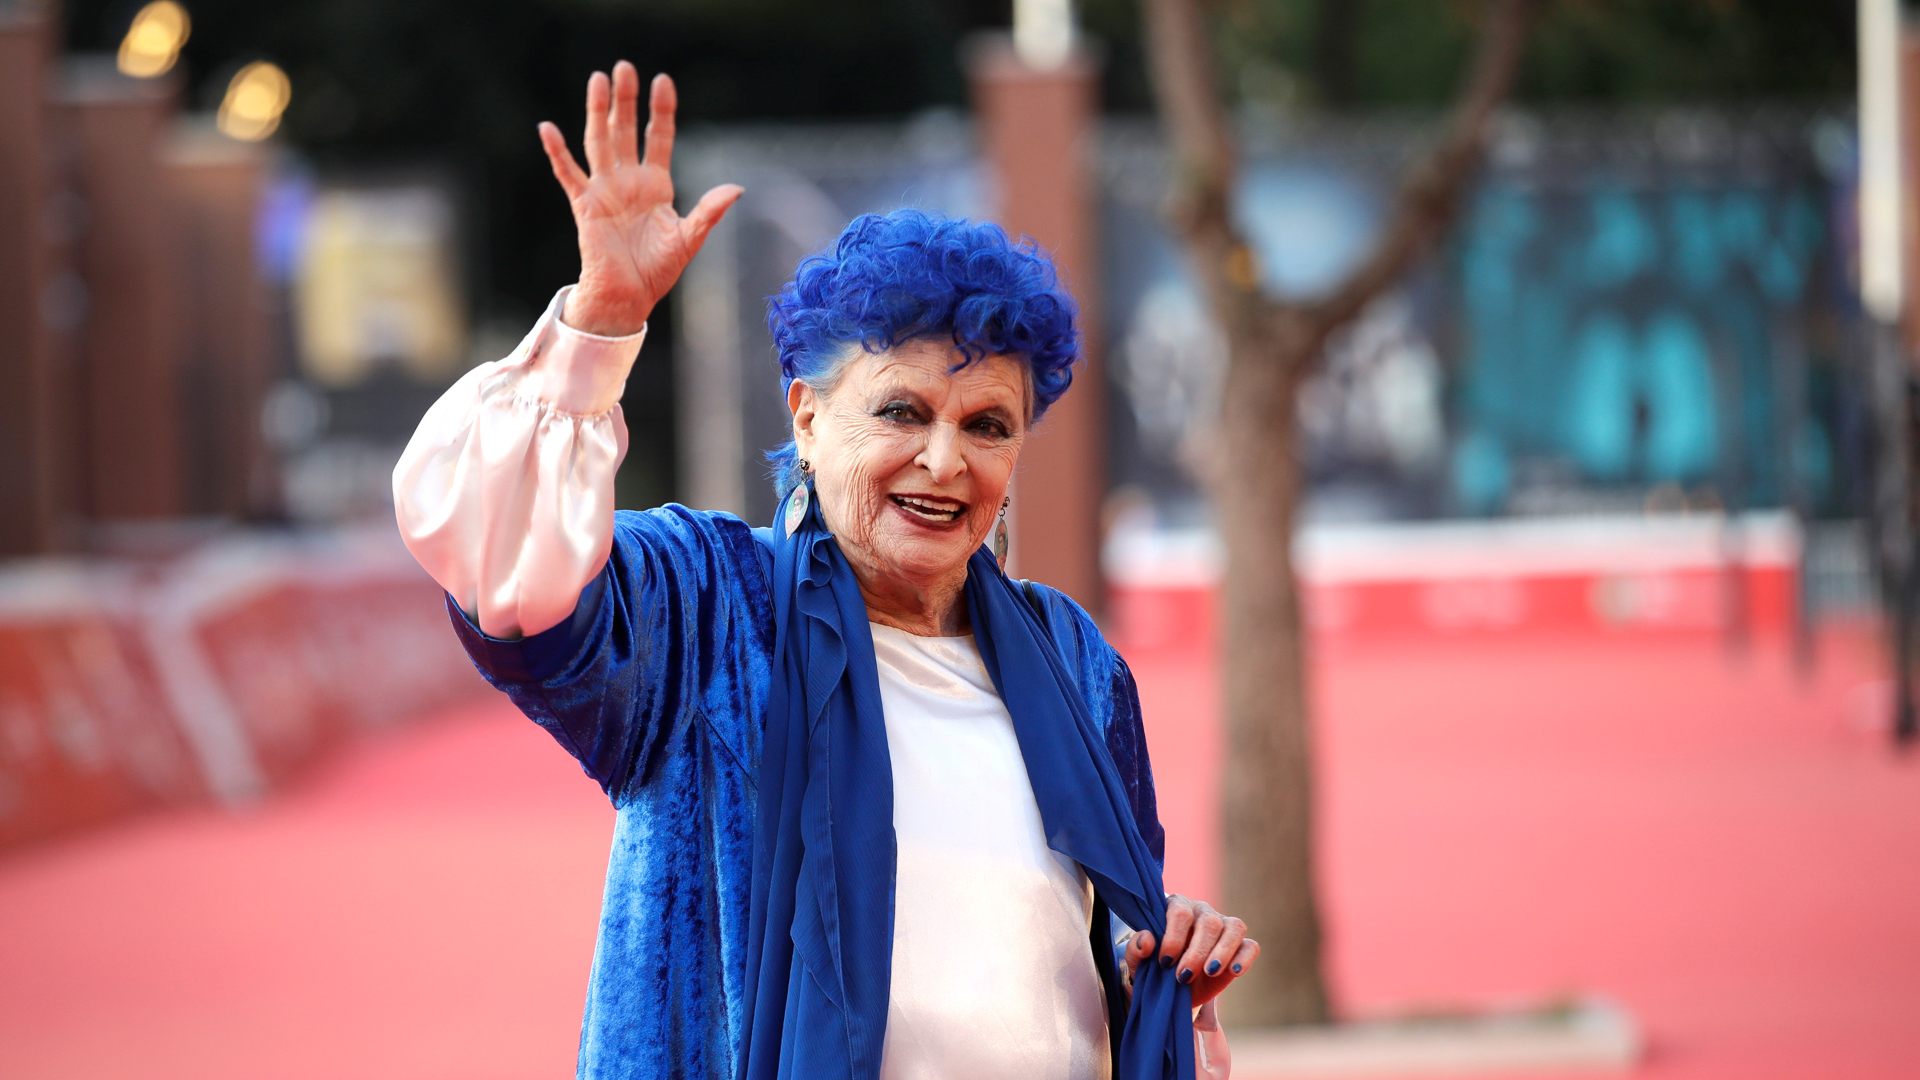 Muere la actriz Lucía Bosé a los 89 años